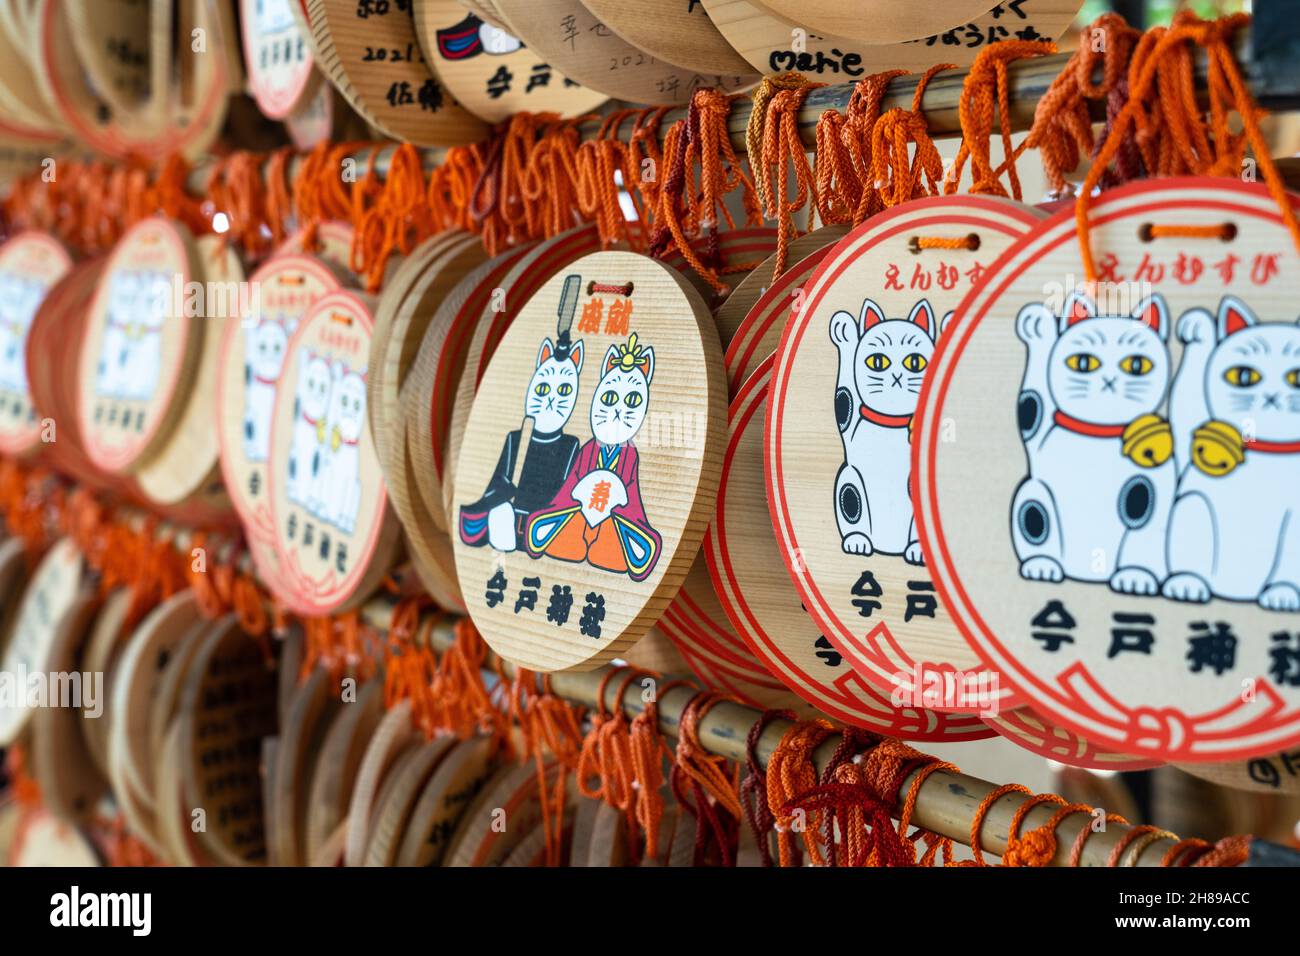 Maneki Neko oder winkende Glückskatze ema-Gebetstafeln am Imado Jinja-Schrein, einem schintoistischen Schrein, der der Suche nach Liebe in Asakusa, Tokio, Japan, gewidmet ist. Die Gläubigen hängen die Tafeln mit ihren Wünschen, Träumen oder Gebeten im Tempel auf. Stockfoto